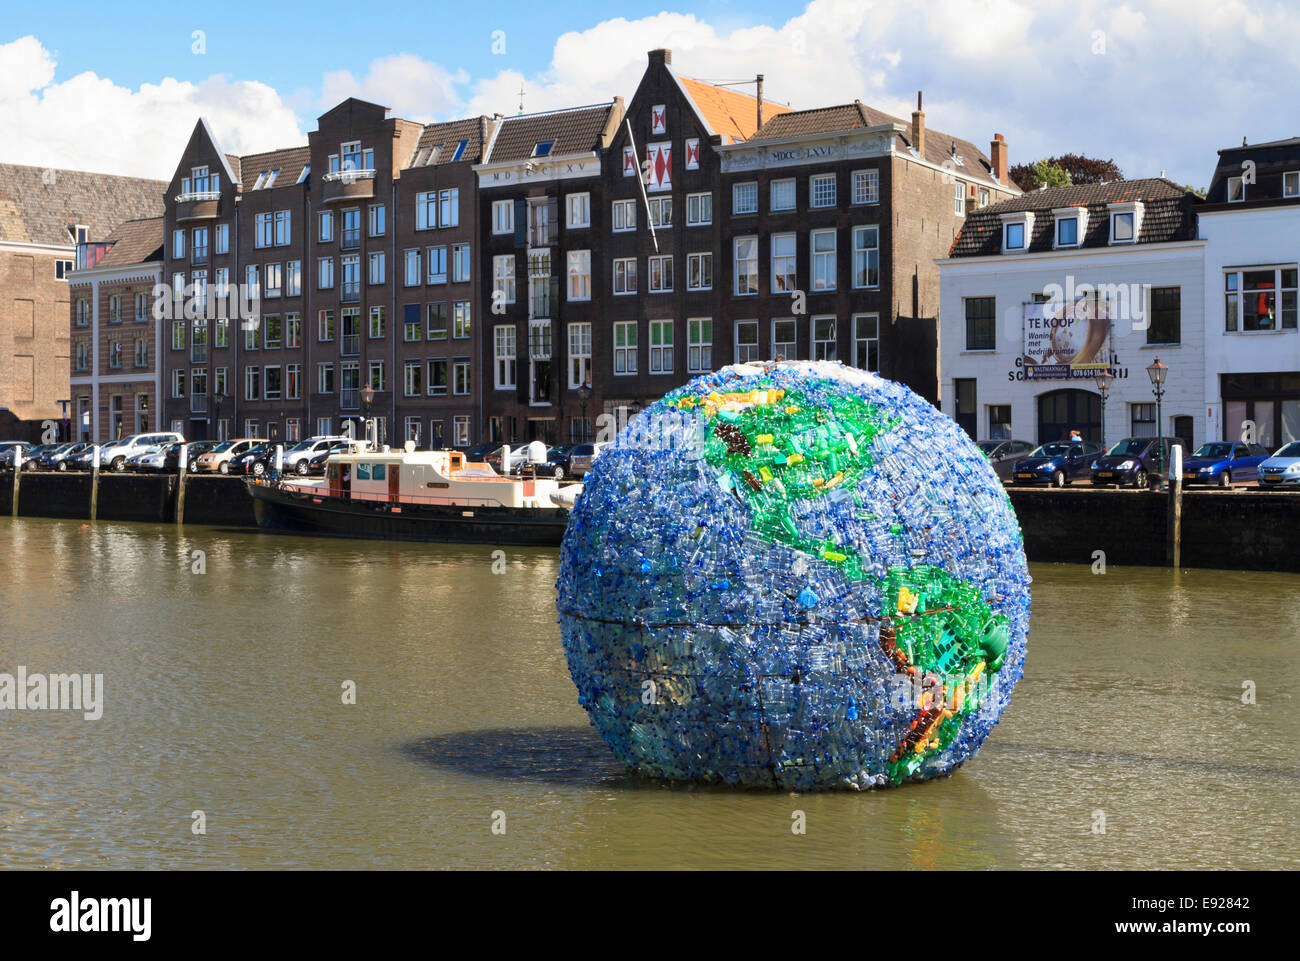 DORDRECHT, Paesi Bassi - 11 agosto: enorme globo di plastica, denominata World cucciolata, realizzato da 6000 bottiglie di plastica. Foto Stock